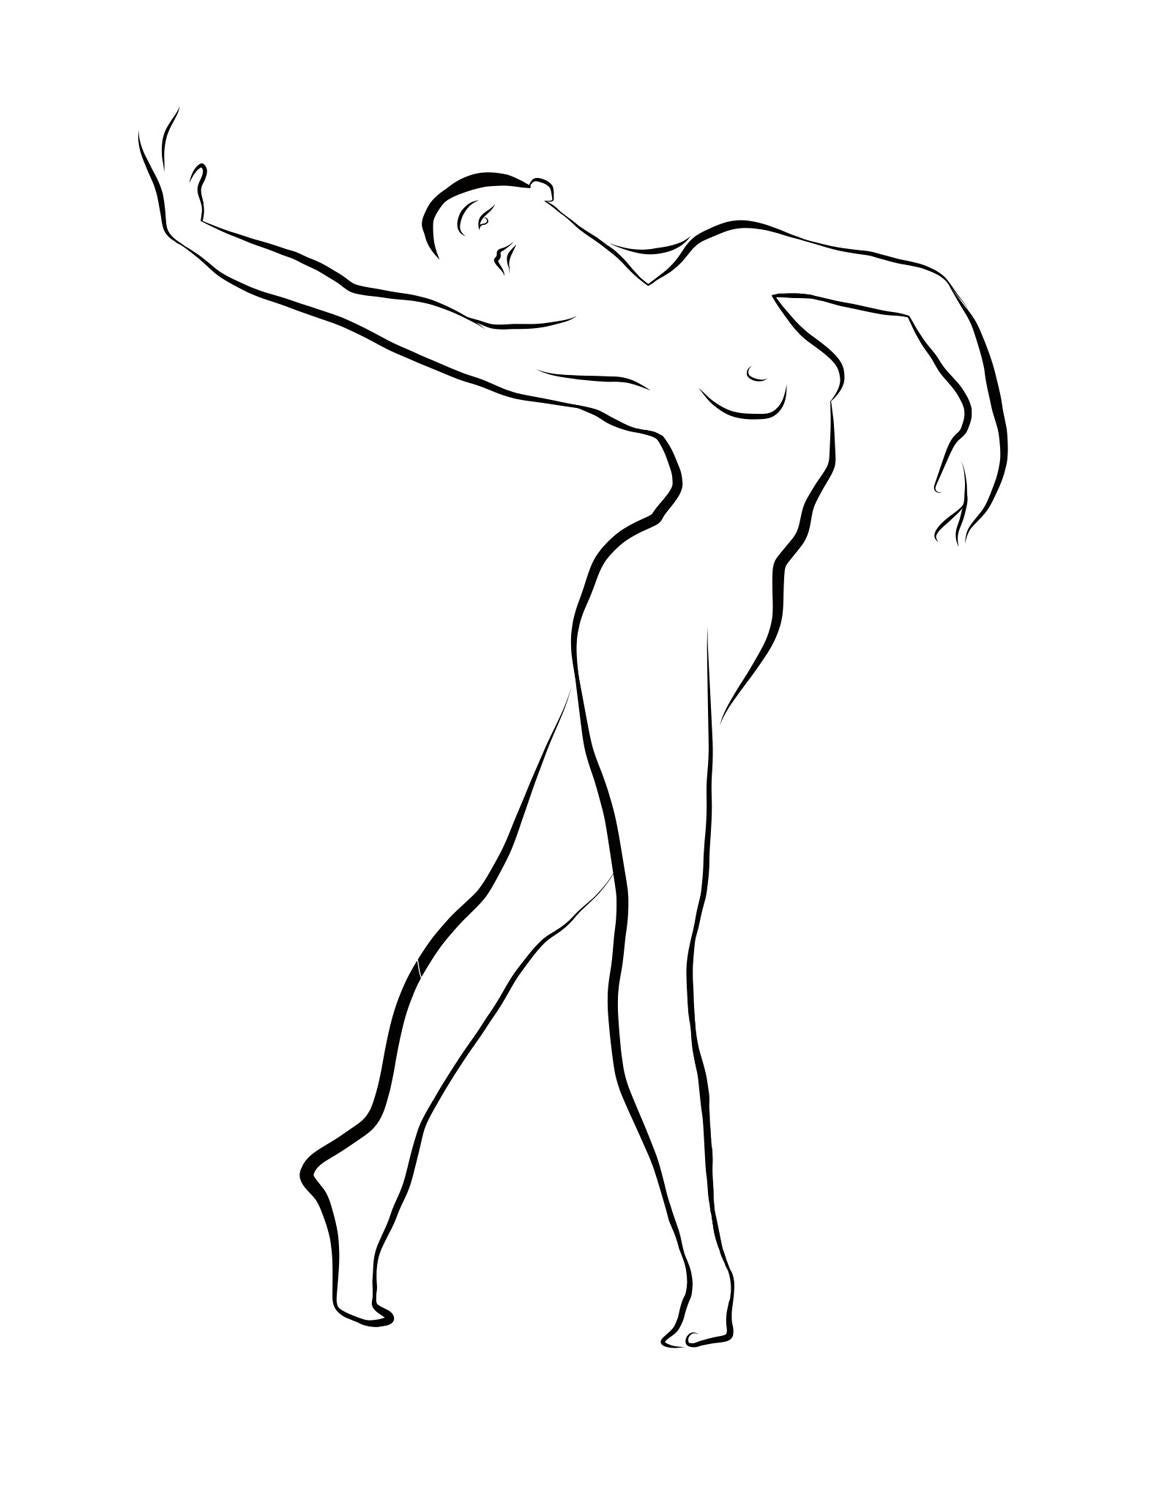 Michael Binkley Nude Print - Haiku #36, 3/50 - Digital Vector Drawing Graceful Dancing Female Nude Woman Fig